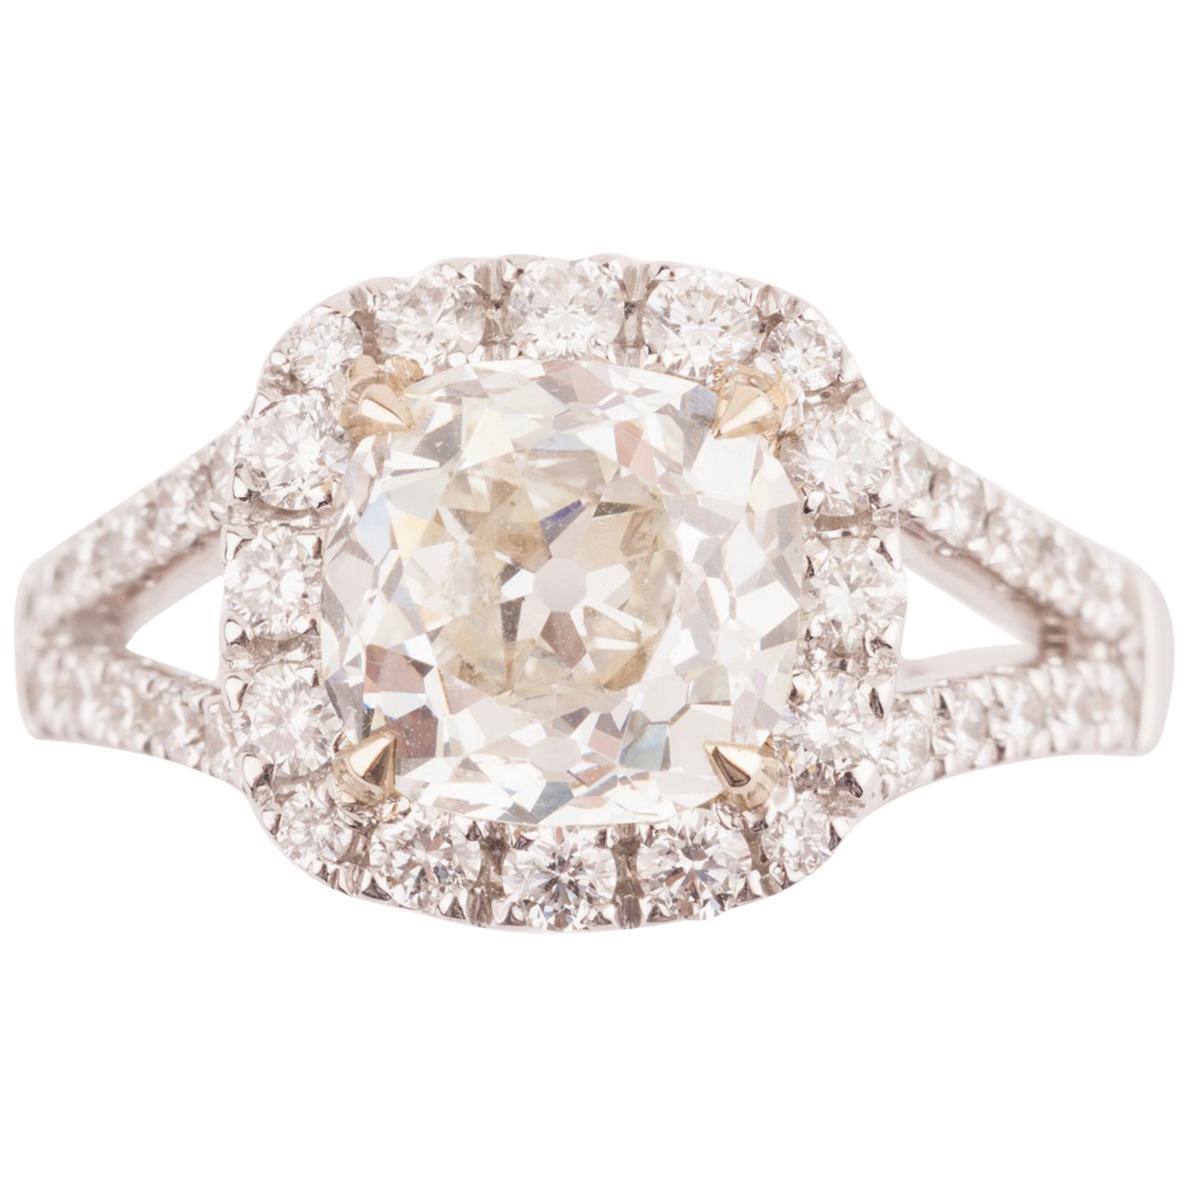 Certified 2.61 Carat Diamond Engagement Ring